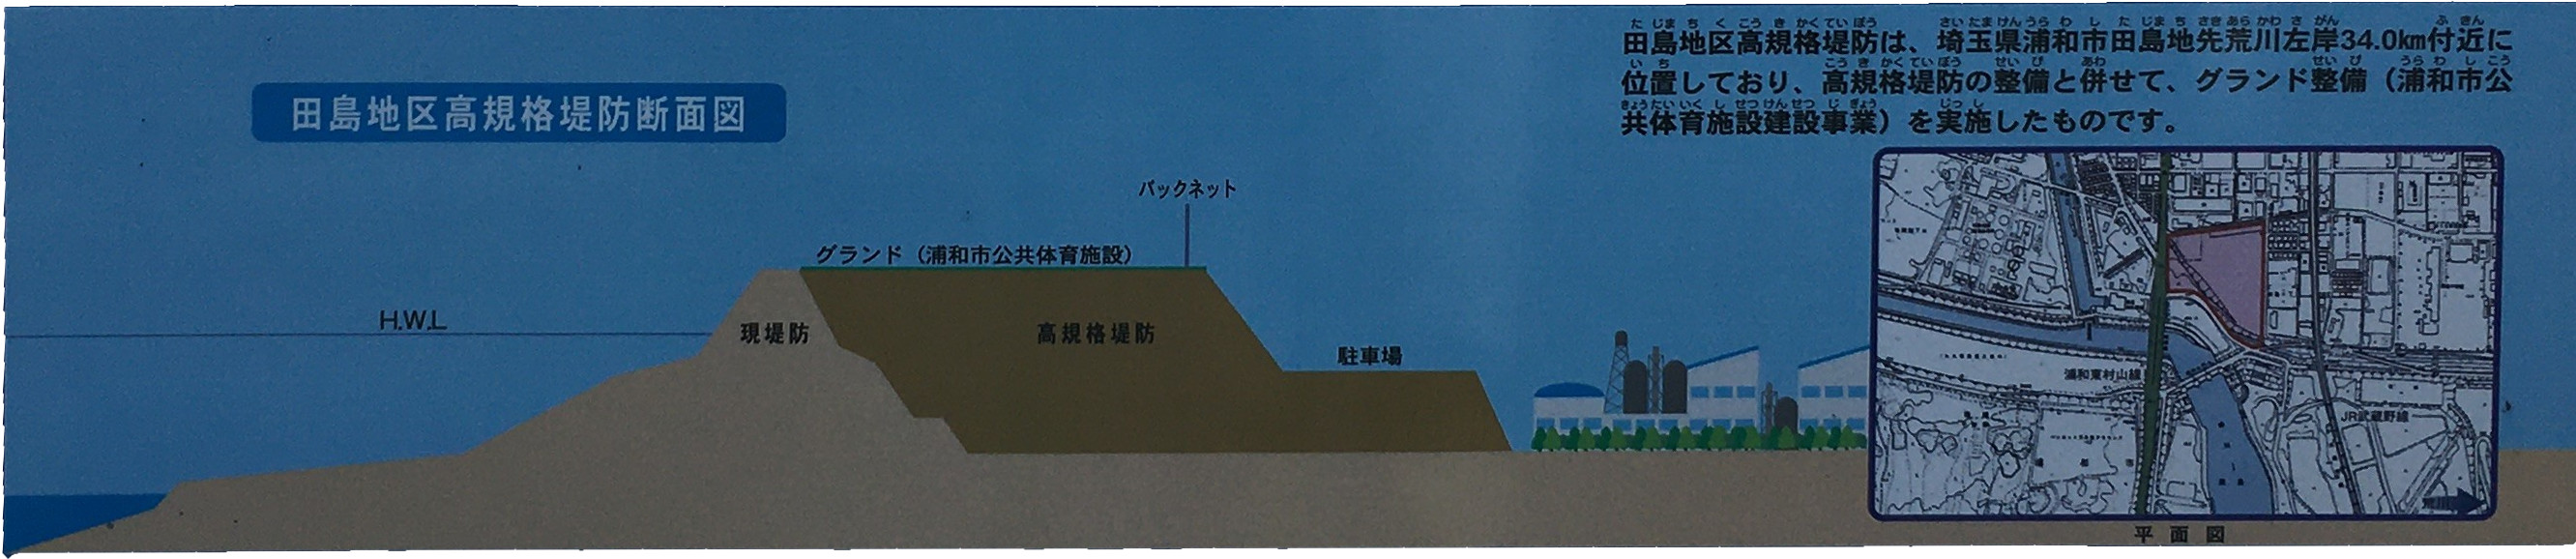 田島地区高規格堤防断面図